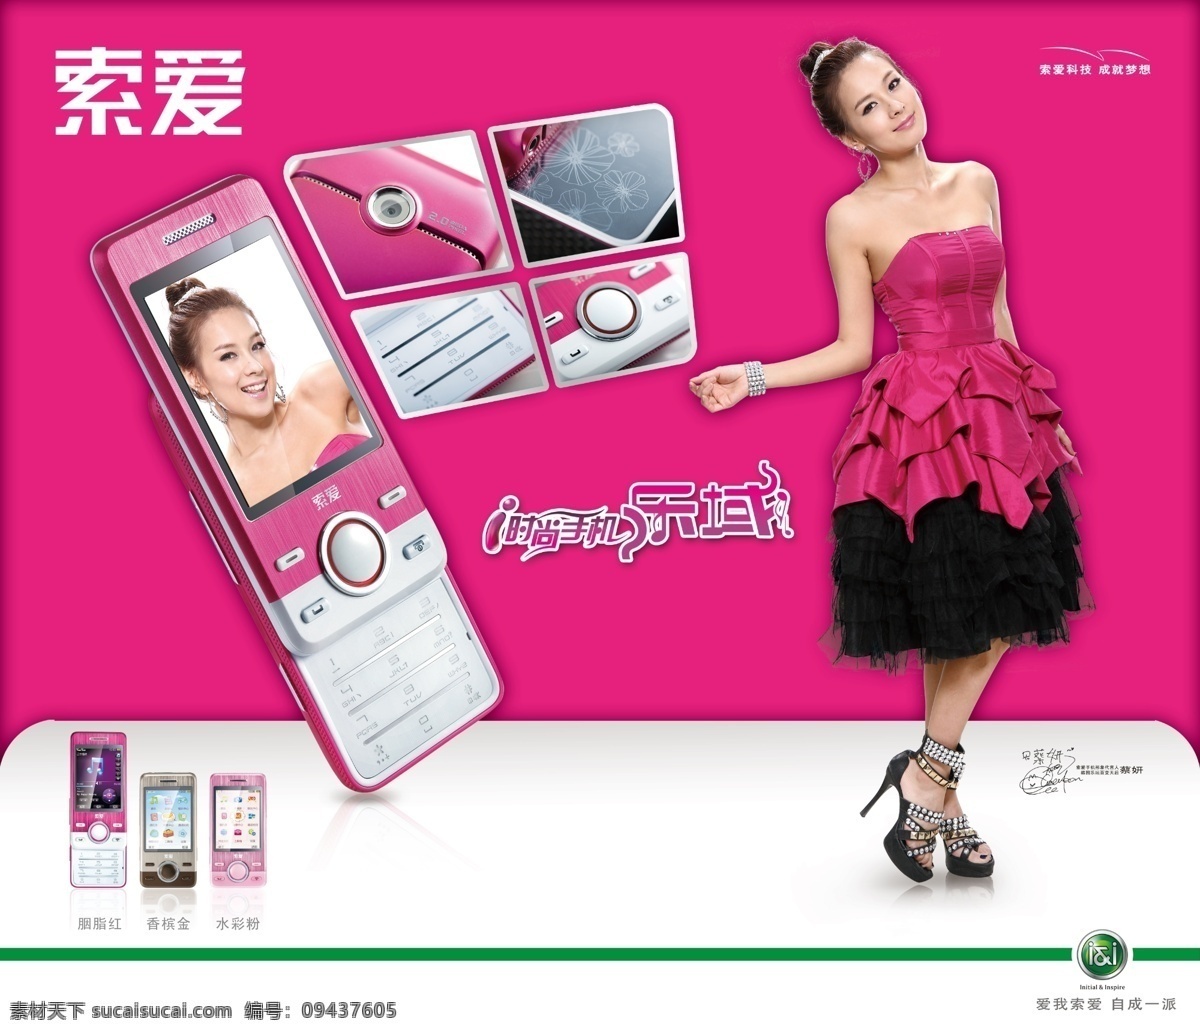 索爱手机 索爱 手机 蔡妍 美女 时尚手机 粉色 手机海报 海报背景 海报 广告设计模板 源文件